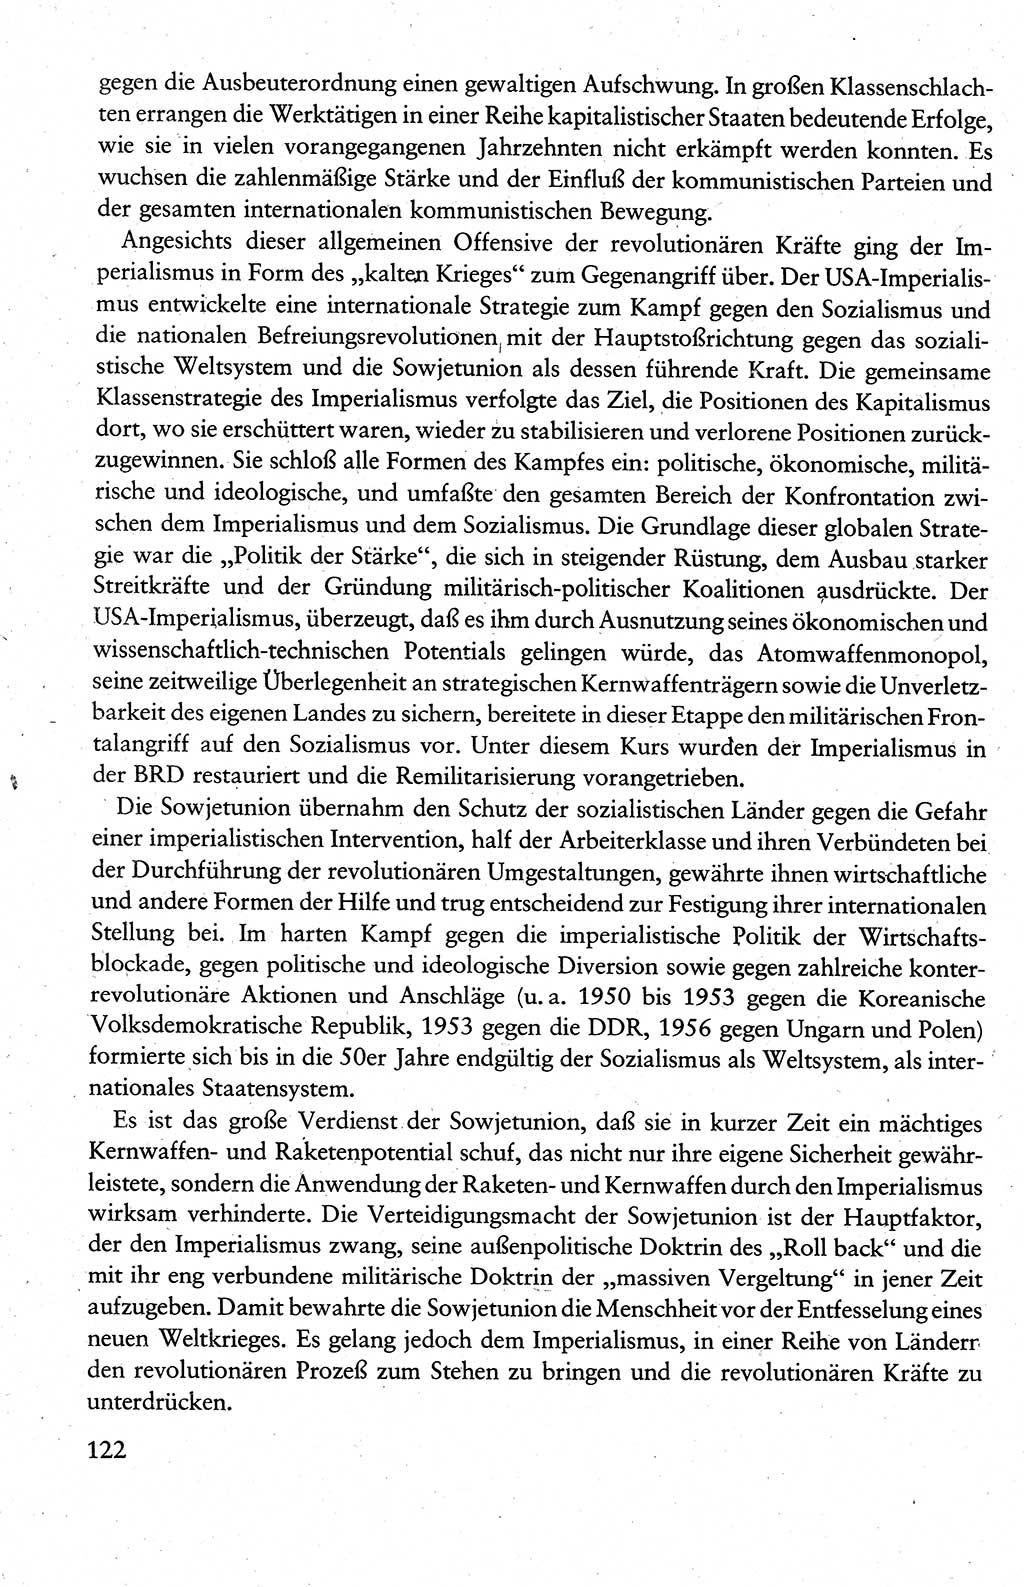 Wissenschaftlicher Kommunismus [Deutsche Demokratische Republik (DDR)], Lehrbuch für das marxistisch-leninistische Grundlagenstudium 1983, Seite 122 (Wiss. Komm. DDR Lb. 1983, S. 122)